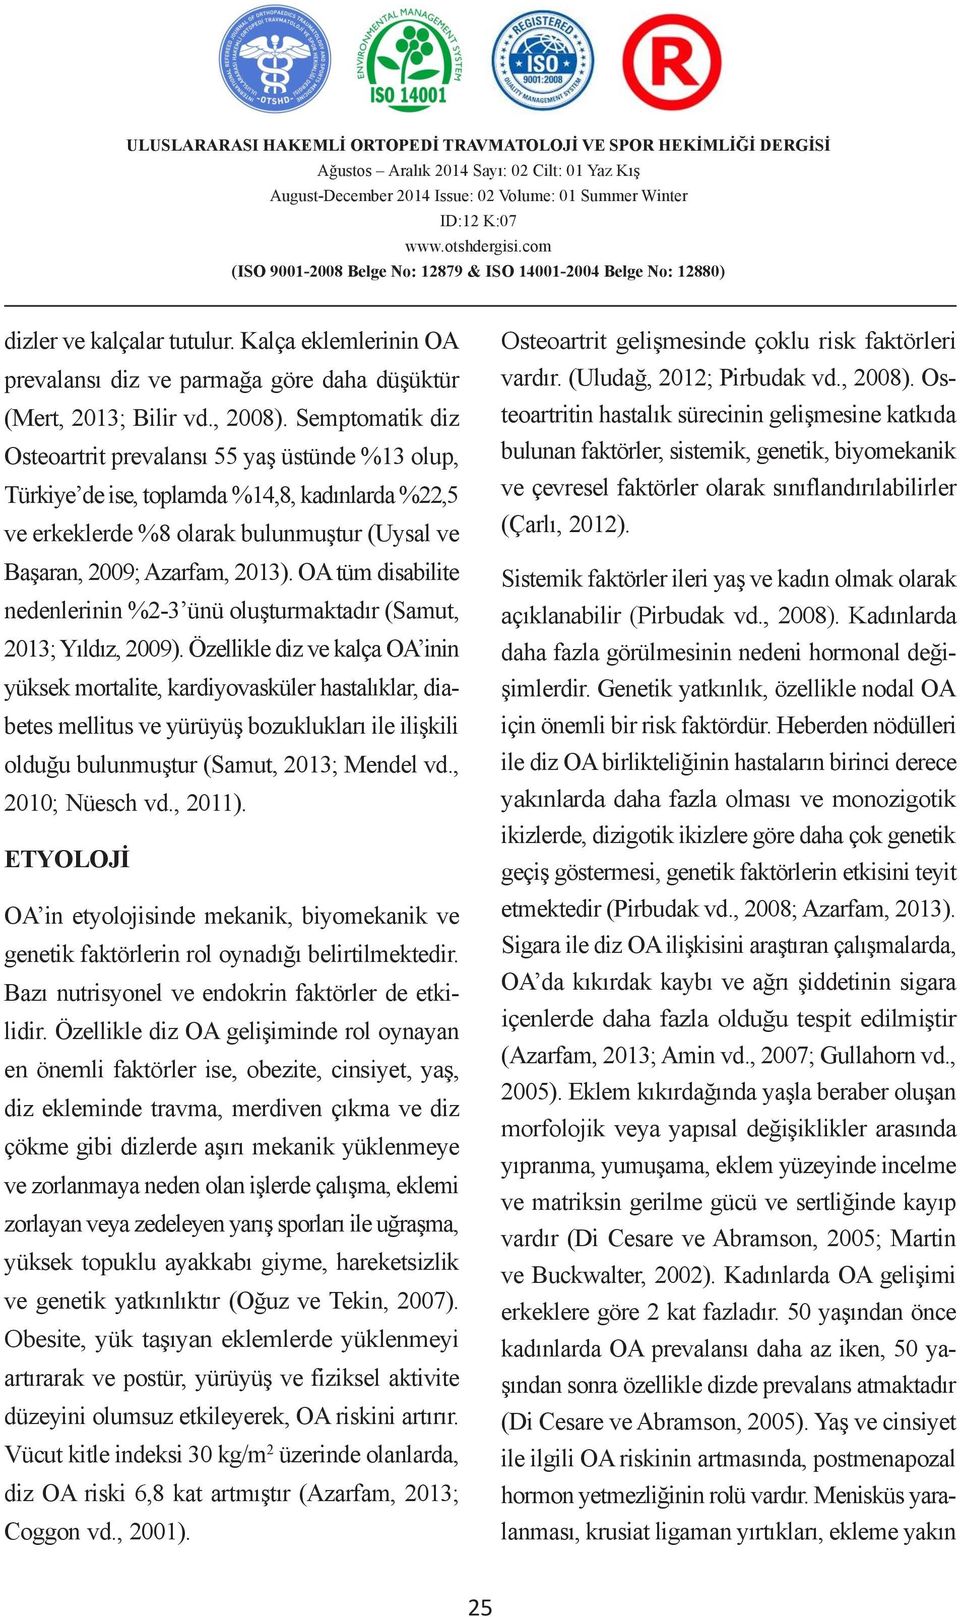 (Uludağ, BĠR 2012; ÖRNEĞĠ Pirbudak vd., 2008). Osteoartritin 2, Ali Serdar hastalık YÜCEL 3 sürecinin gelişmesine katkıda (Mert, 2013; Bilir vd., 2008). Murat Semptomatik KORKMAZ 1, Bülent diz KILIÇ Osteoartrit prevalansı 55 yaş üstünde 1 Güven %13 Grup olup, A.